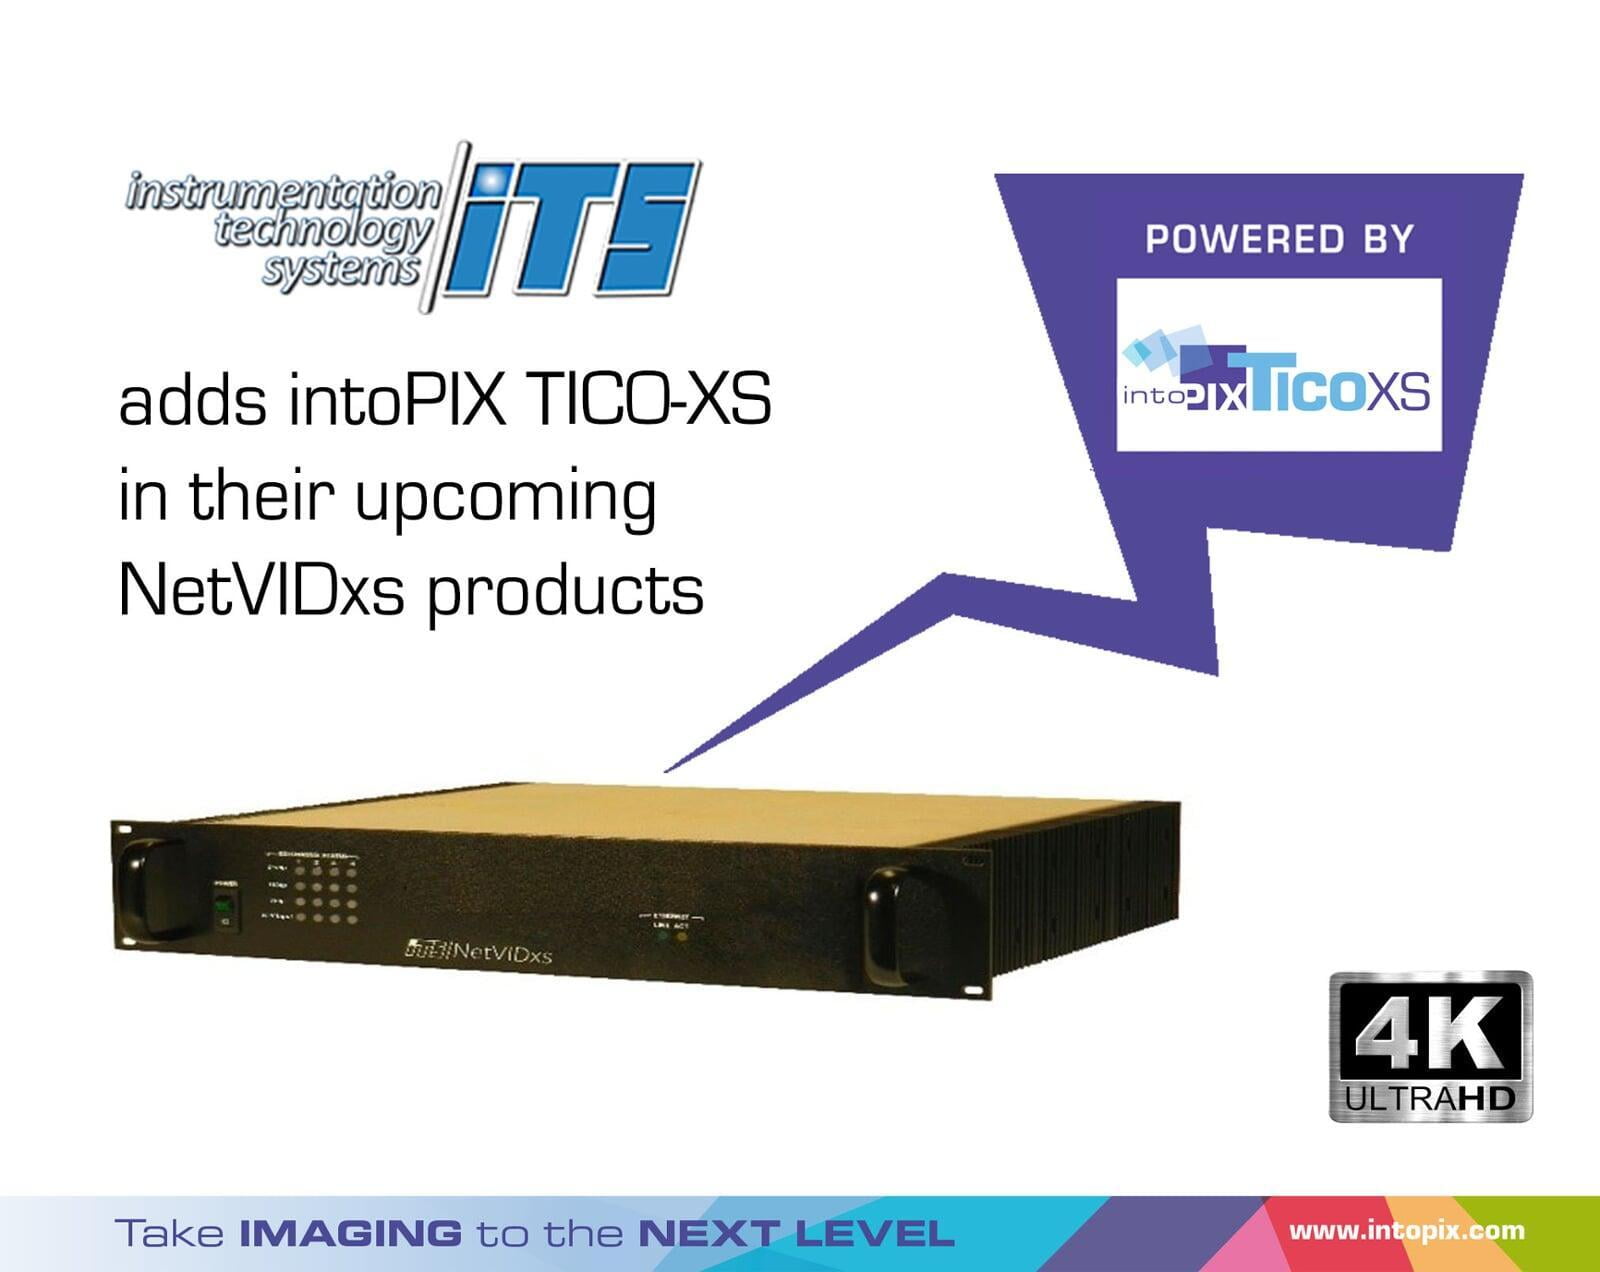 Instrumentation Technology Systems ajoute intoPIX TicoXS à ses prochains NetVIDxs